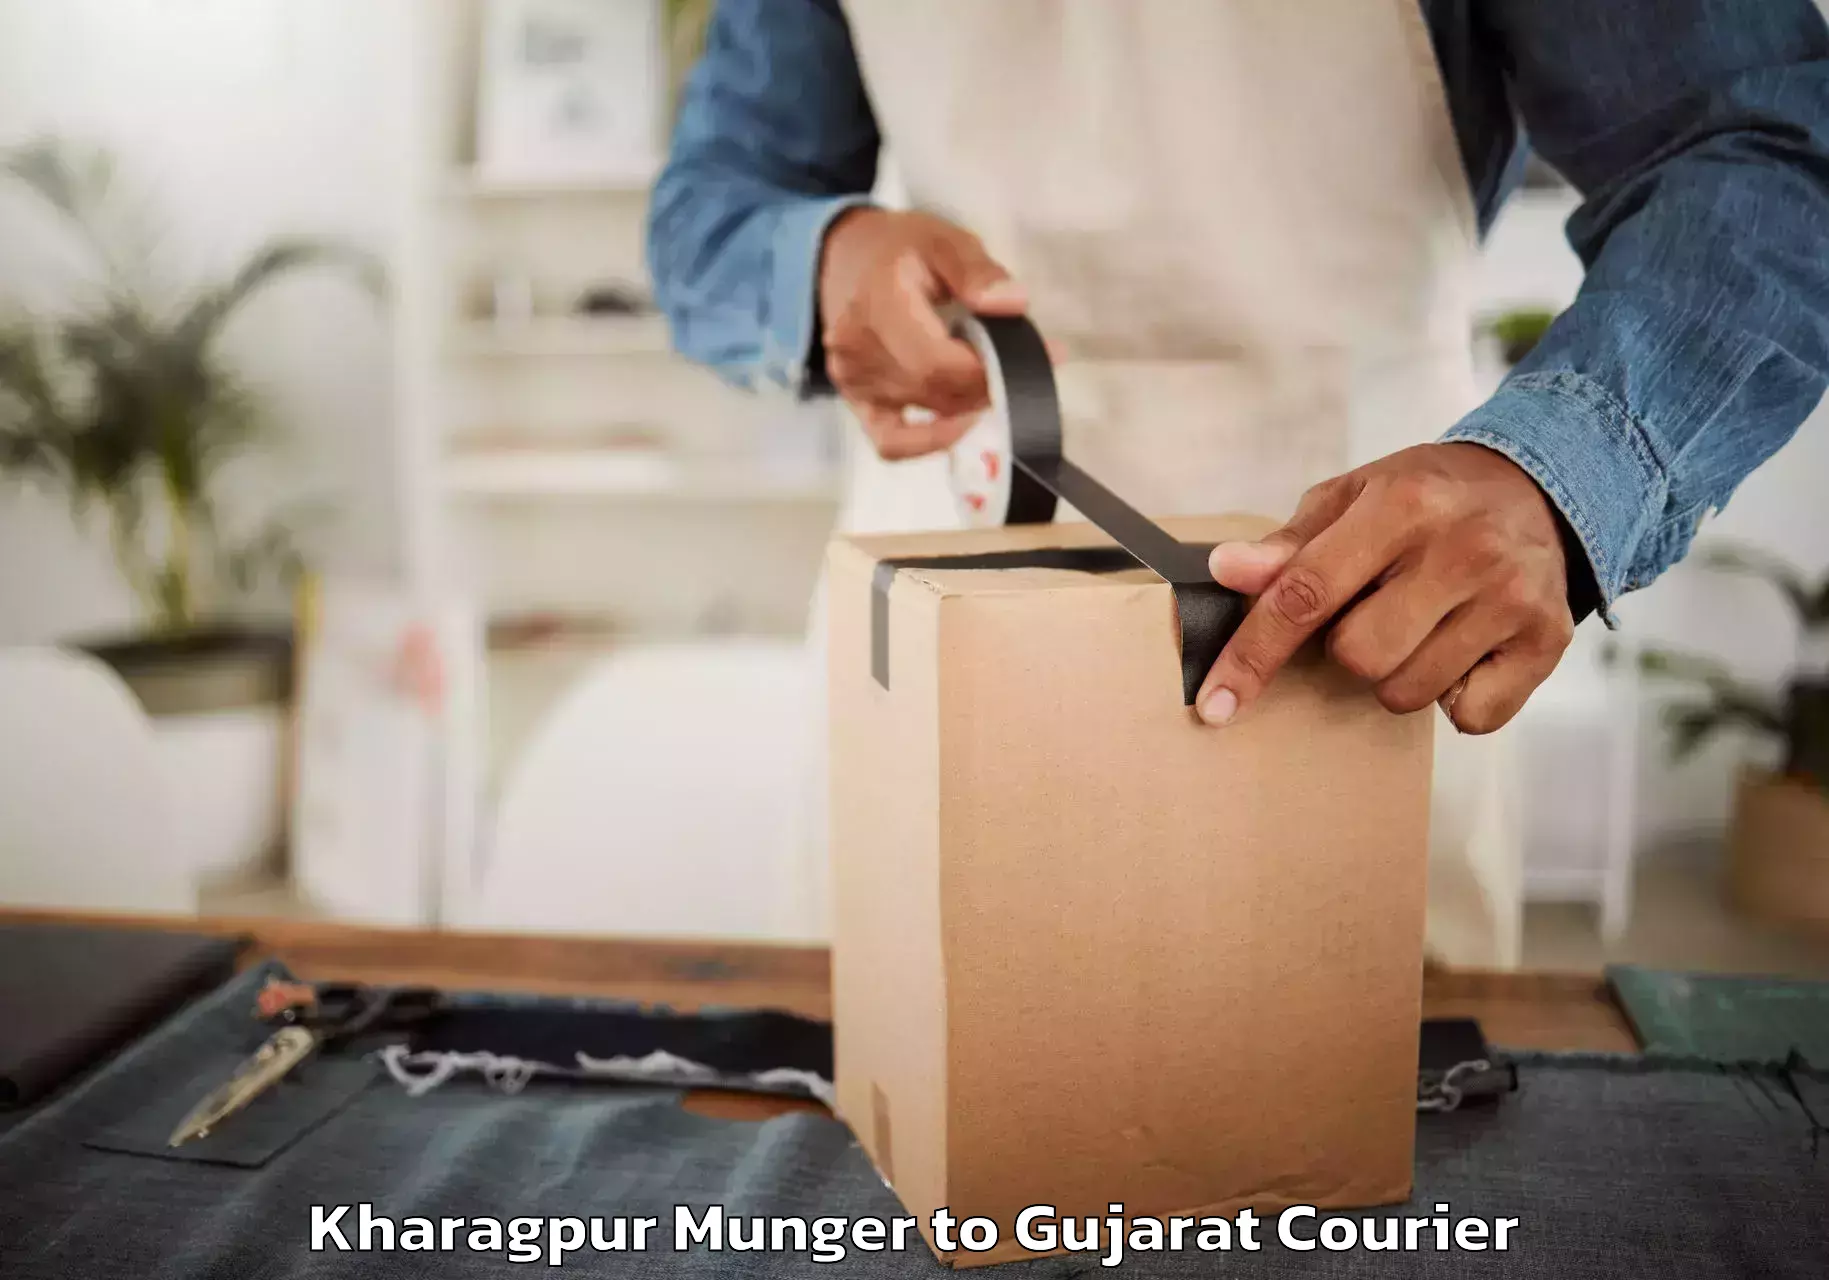 Furniture transport experts Kharagpur Munger to Morbi